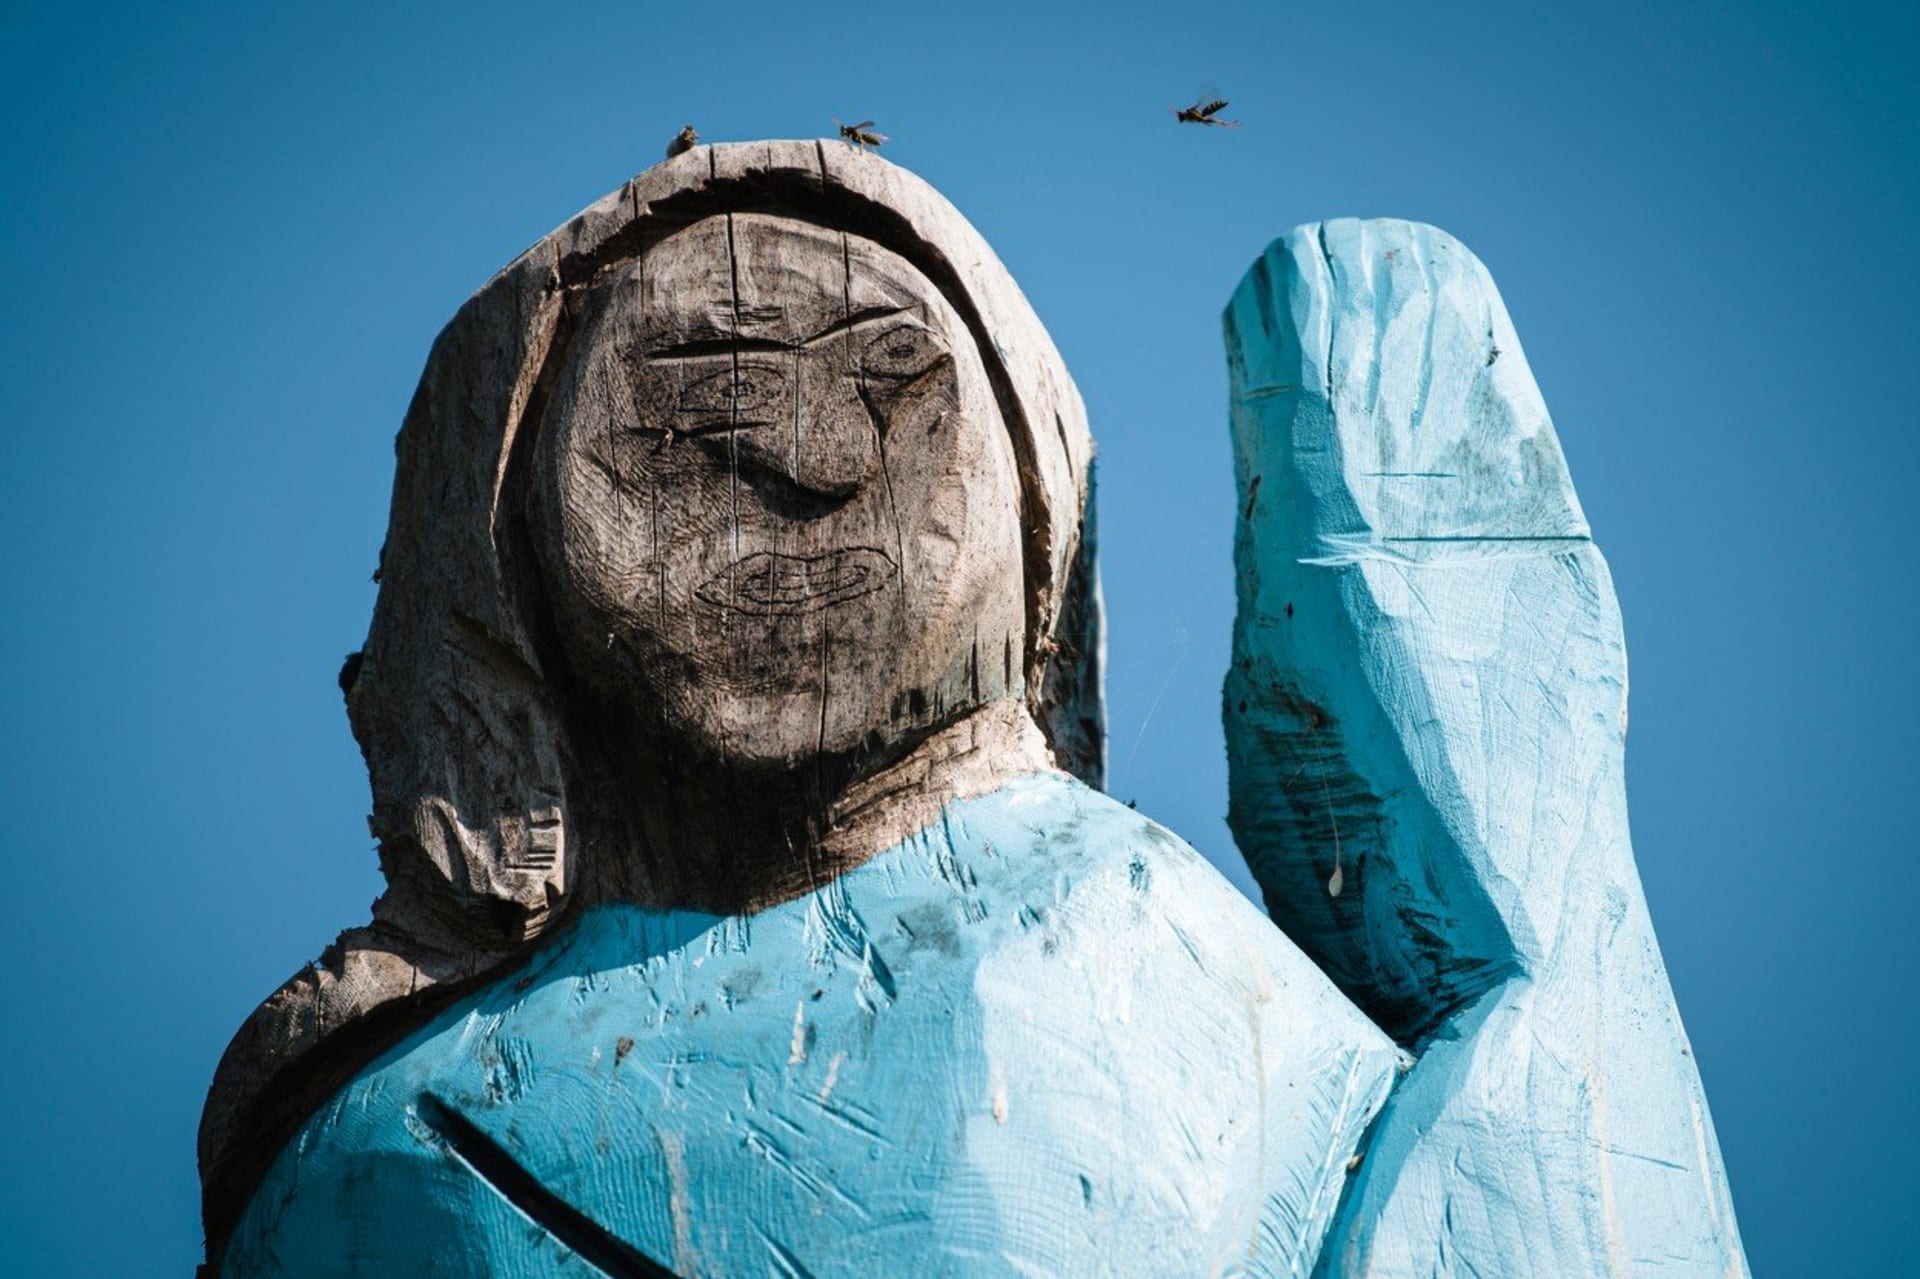 Dřevěná socha Melanie Trumpové poblíž jejího rodného městečka Sevnica